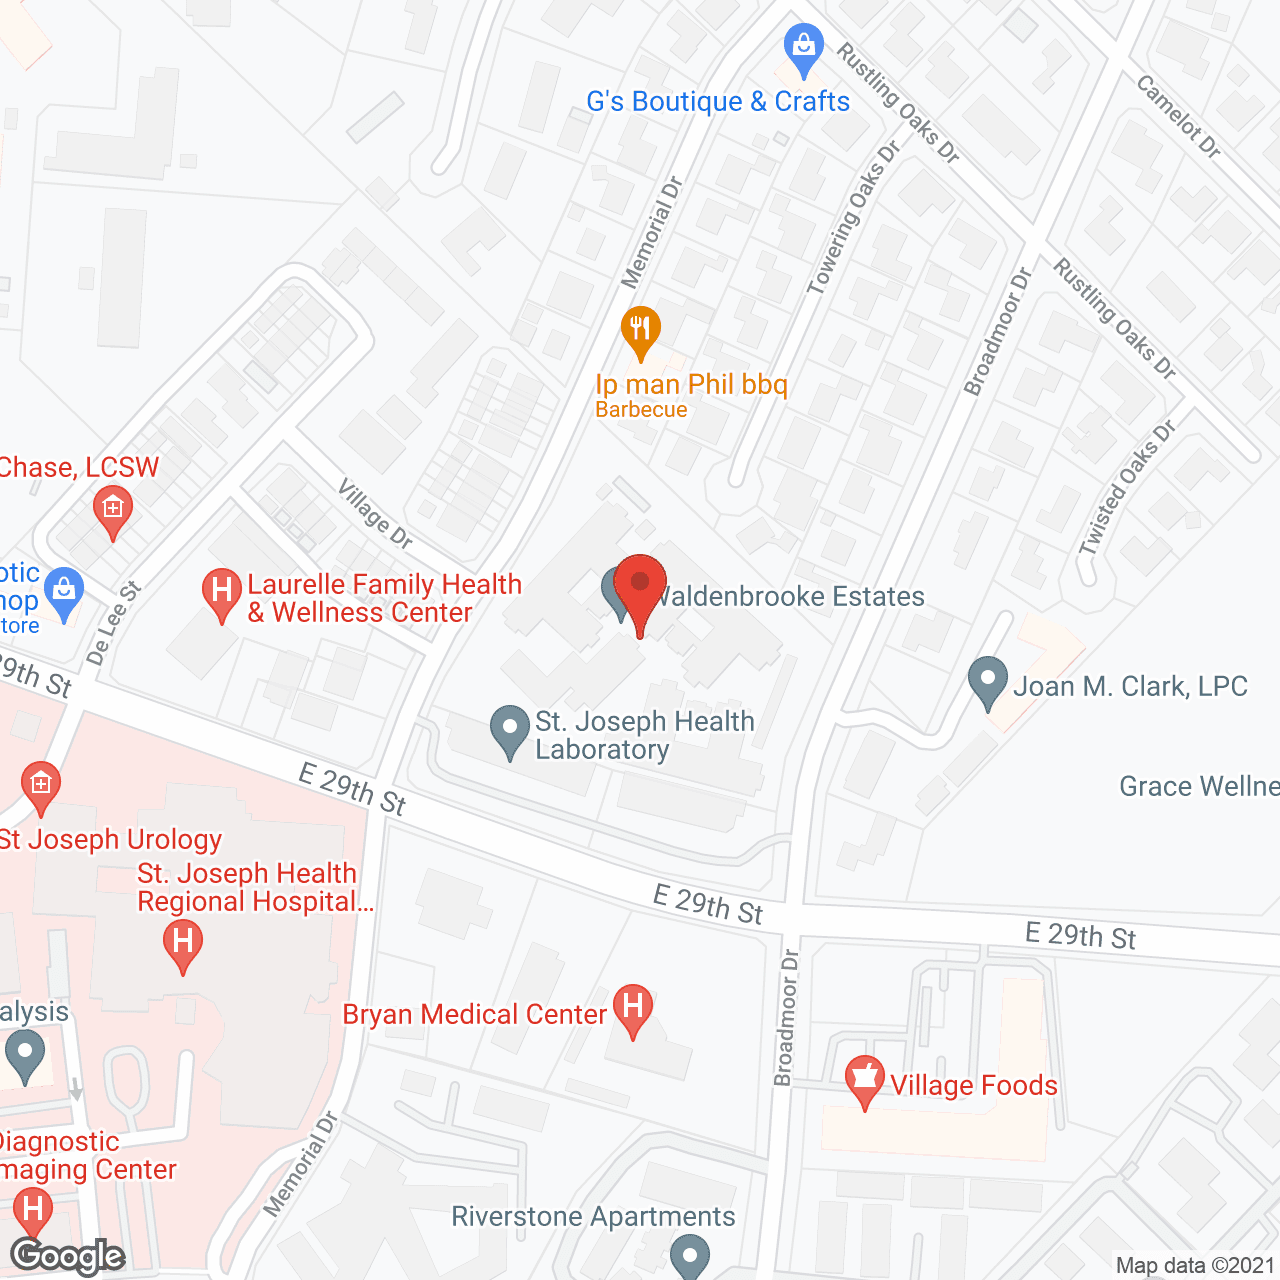 Waldenbrooke Estates in google map